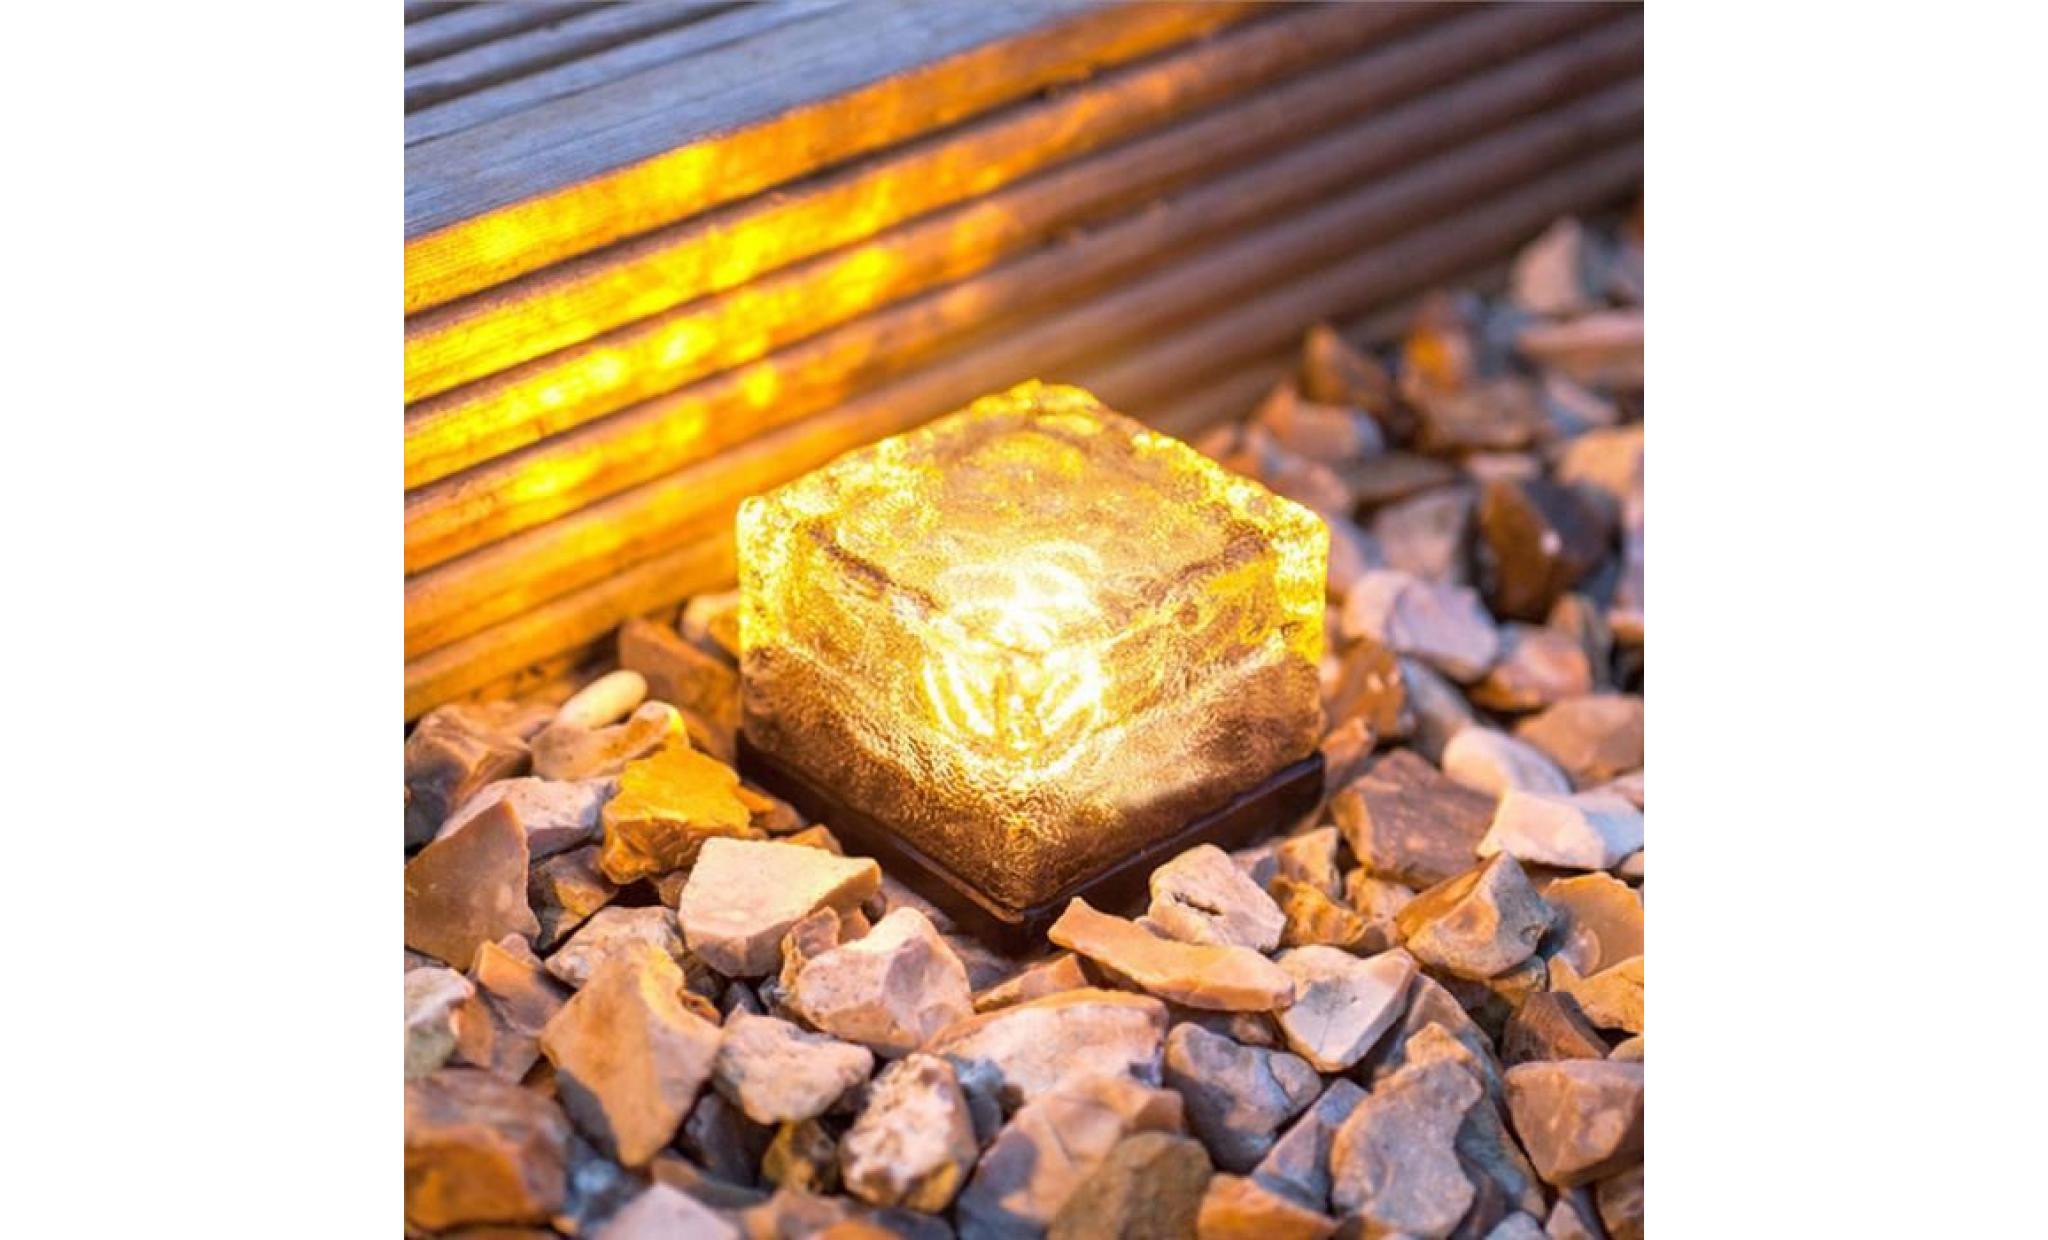 led énergie solaire change de couleur ice cube en cristal extérieur en verre brique hot lights anonywego881